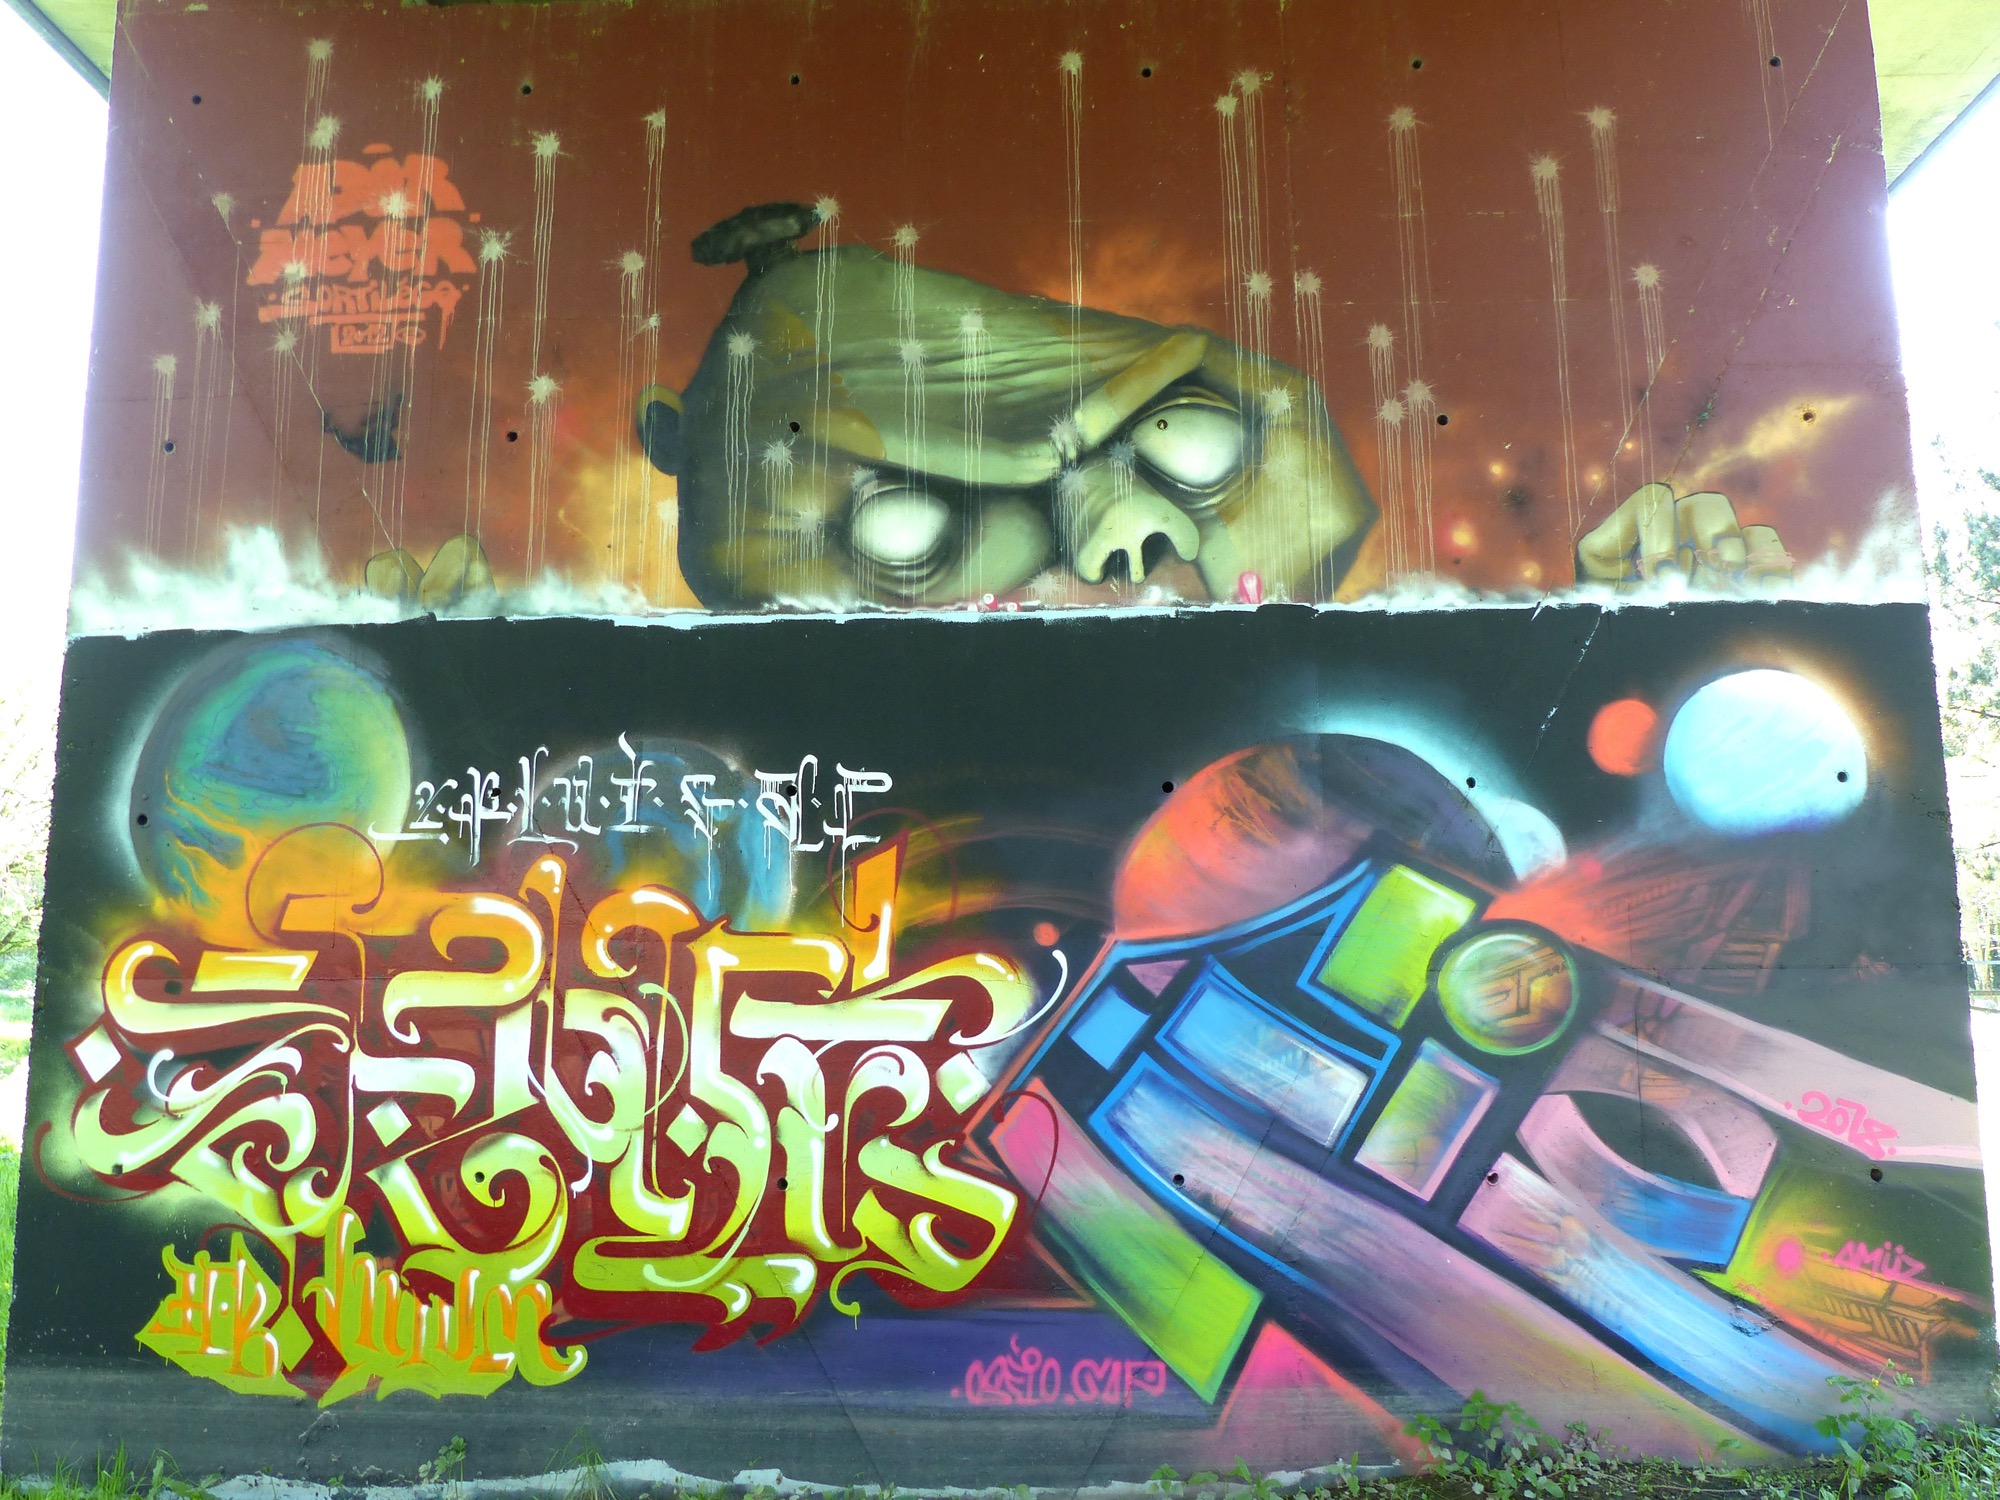 Graffiti 47  captured by Rabot in Rezé France